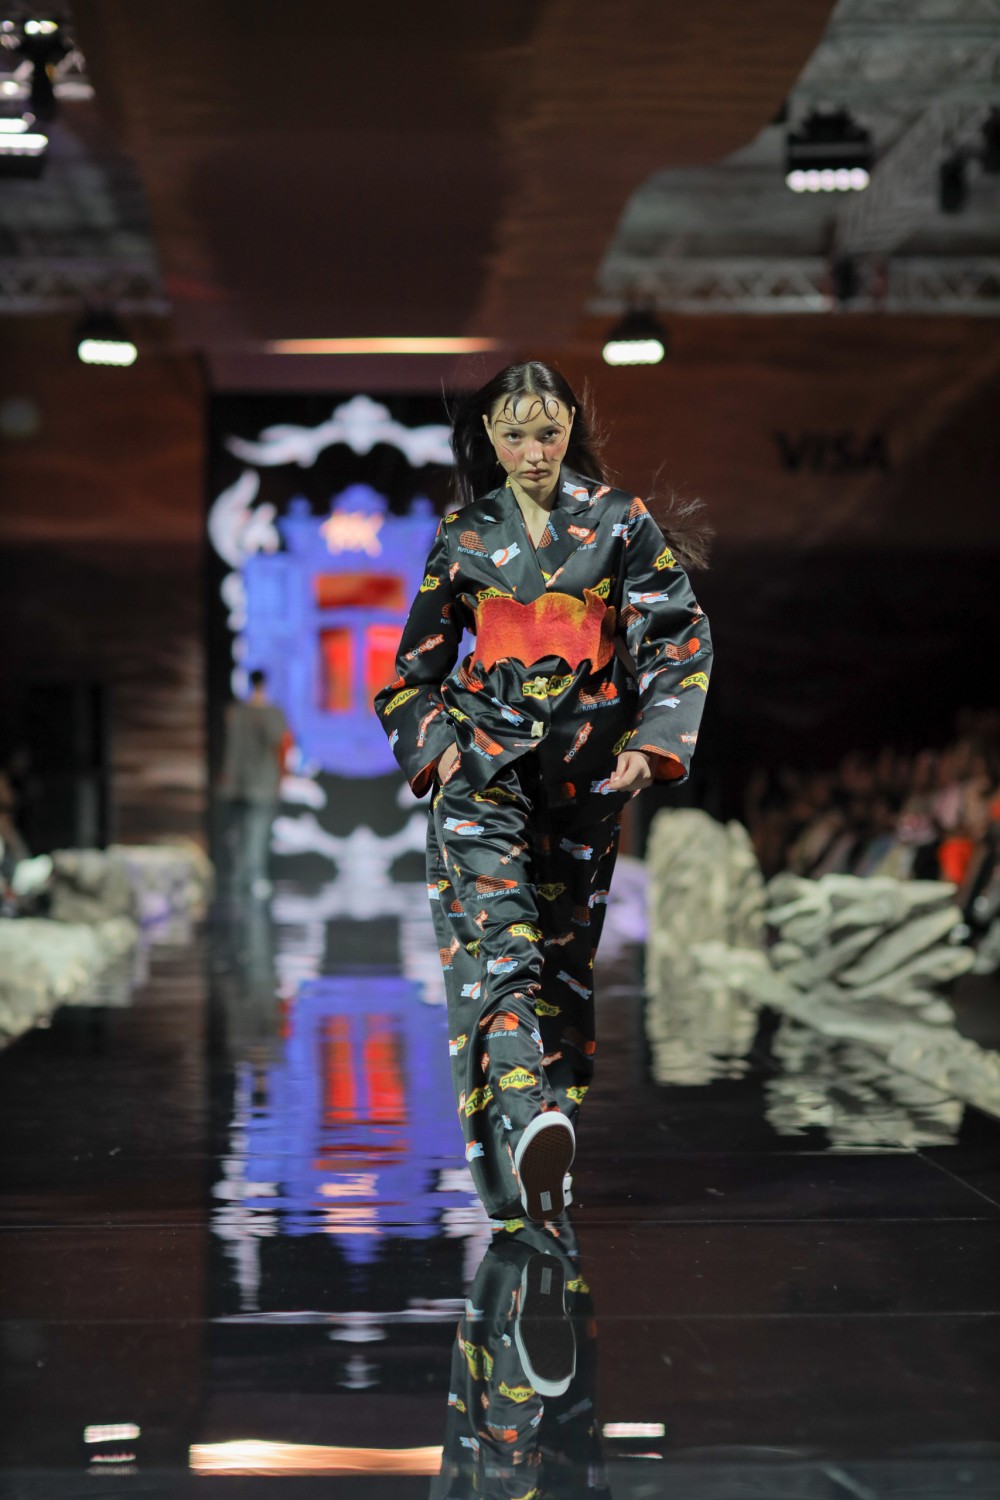 Информационный шум, воспоминания из детства и новый офисный дресс-код: чем запомнился второй день Visa Fashion Week Almaty